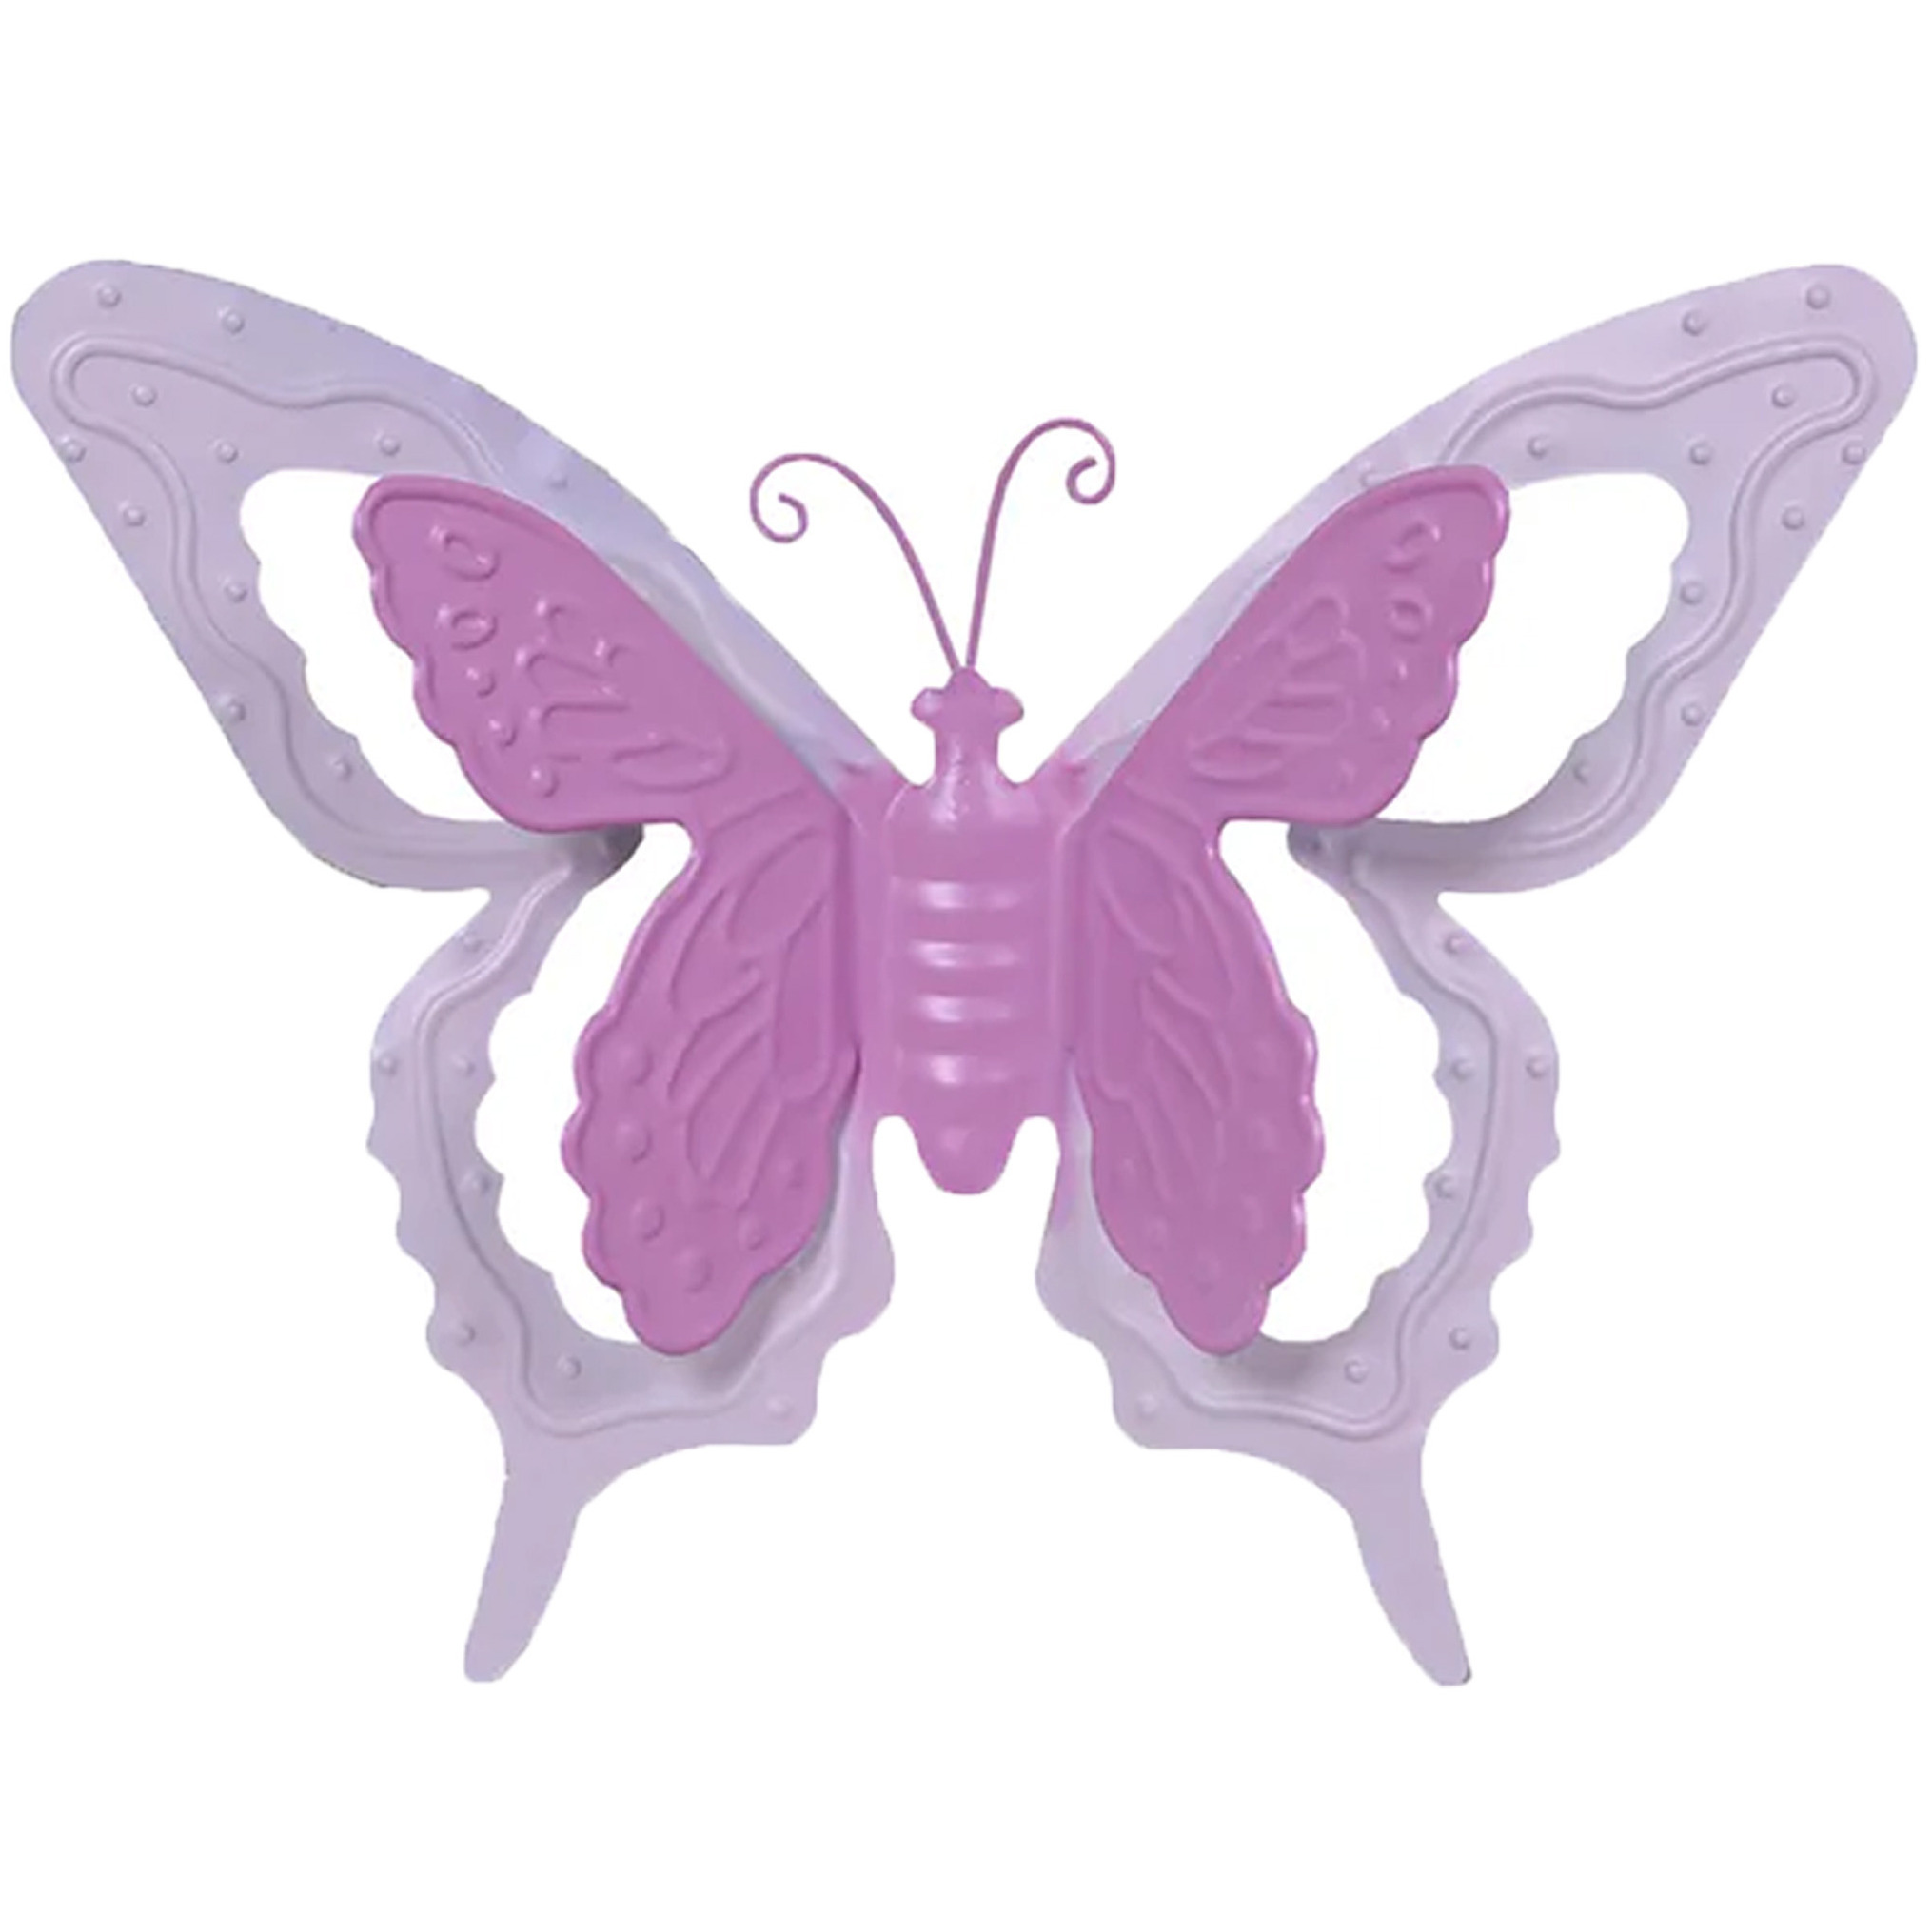 Tuin-schutting decoratie vlinder metaal roze 24 x 18 cm